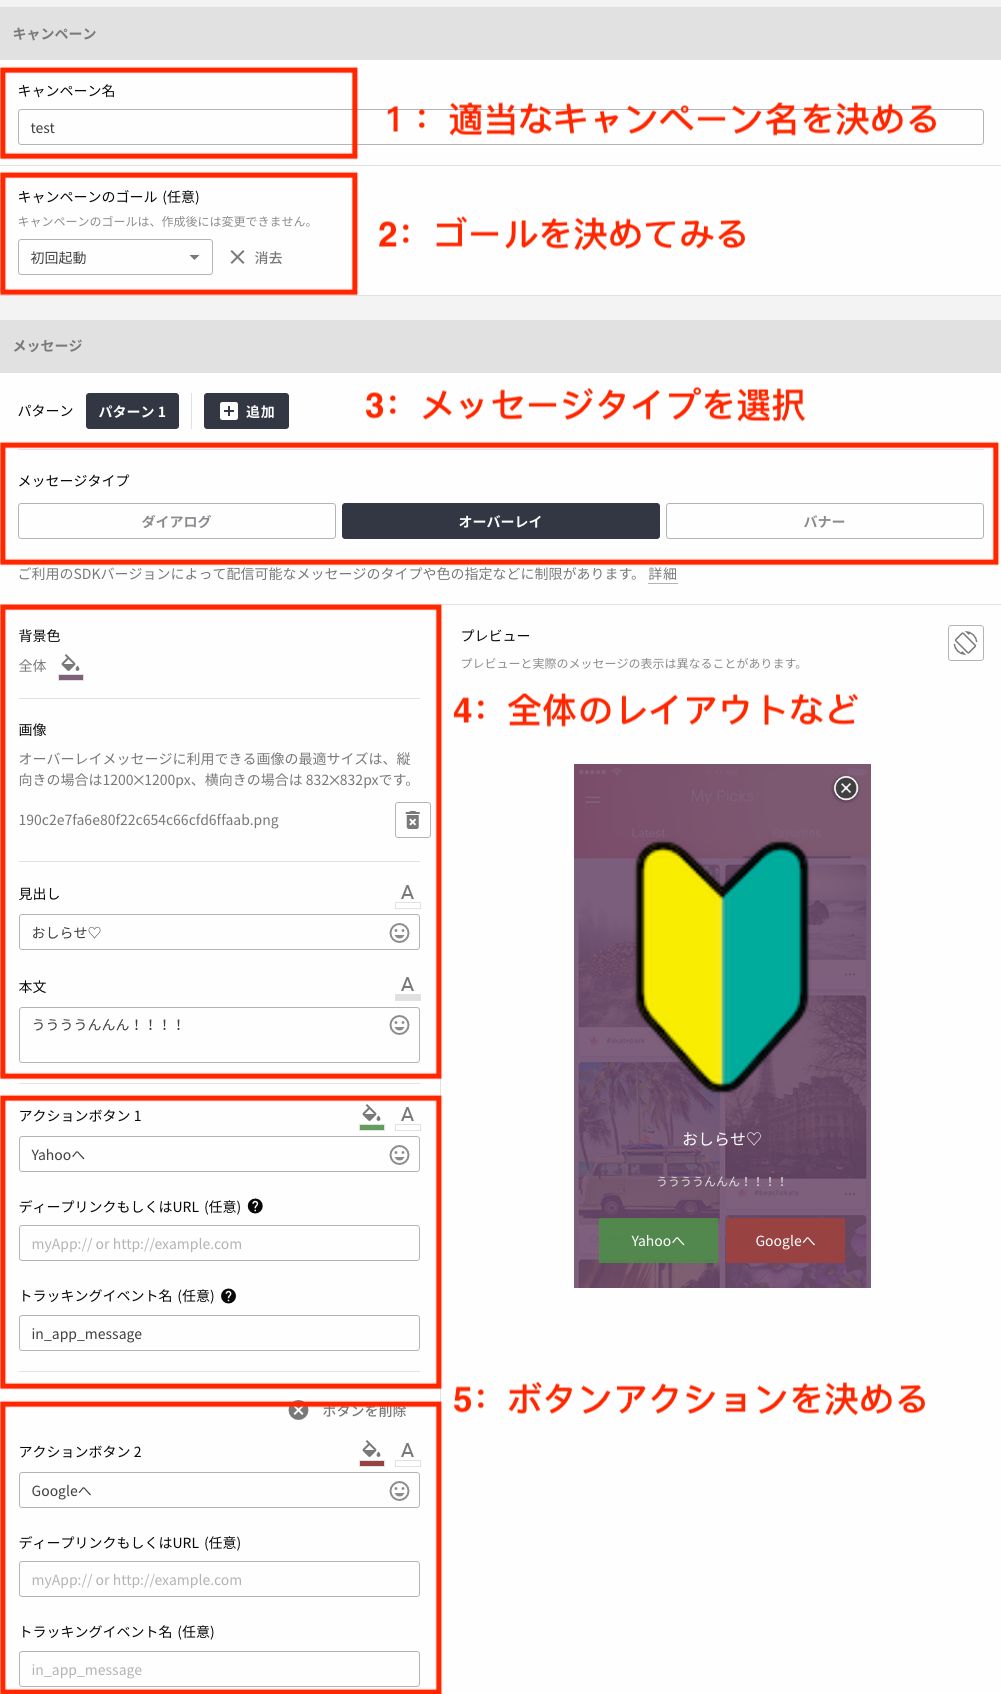 FireShot Capture 7 - 新しいアプリ内メッセージの作成 I Cin_ - https___app.repro.io_apps_y6w5kn69_in_app_messages_new.png